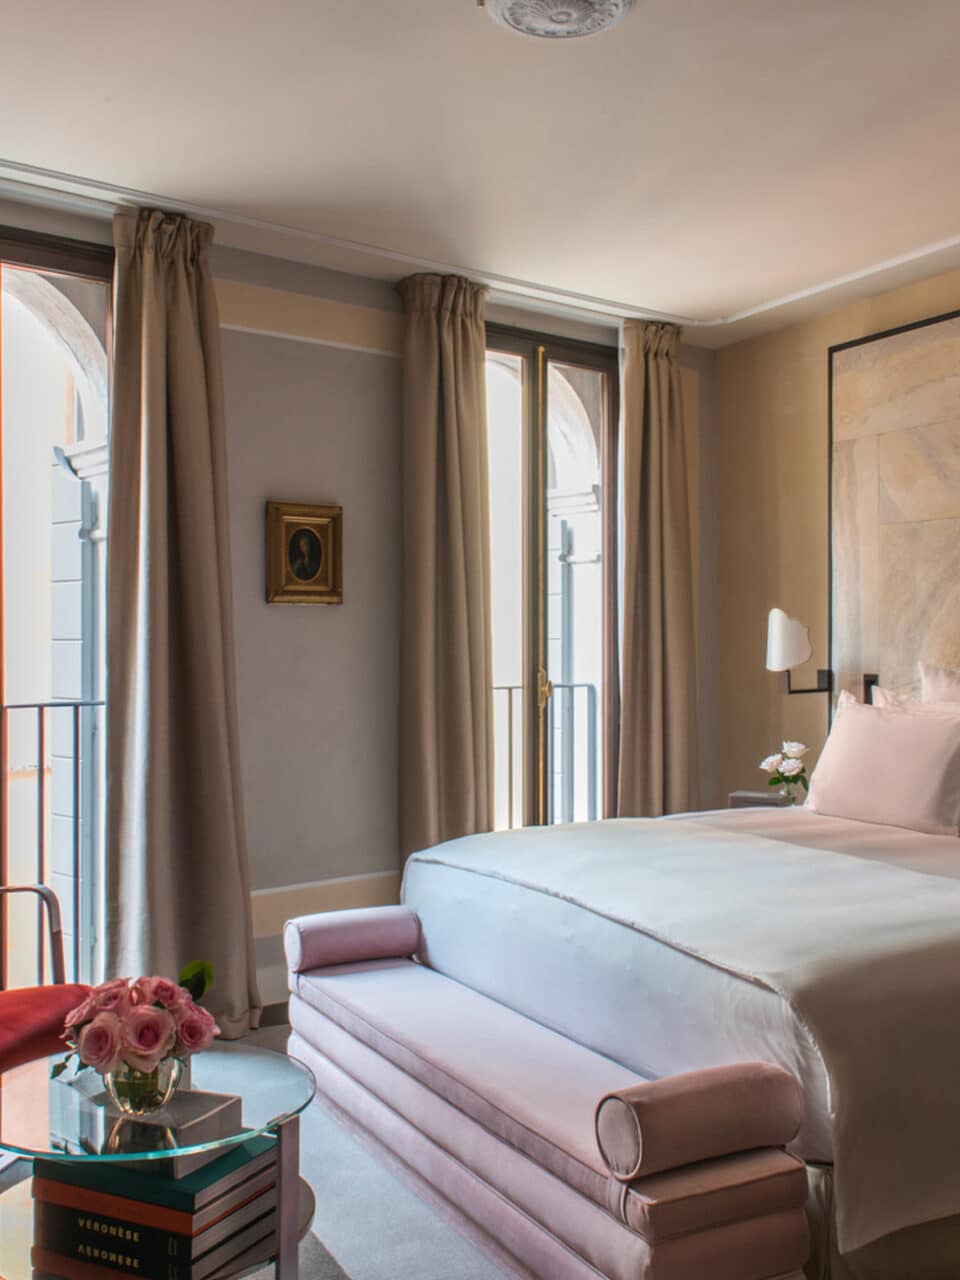 deluxe room 5 star luxury hotel venice italy